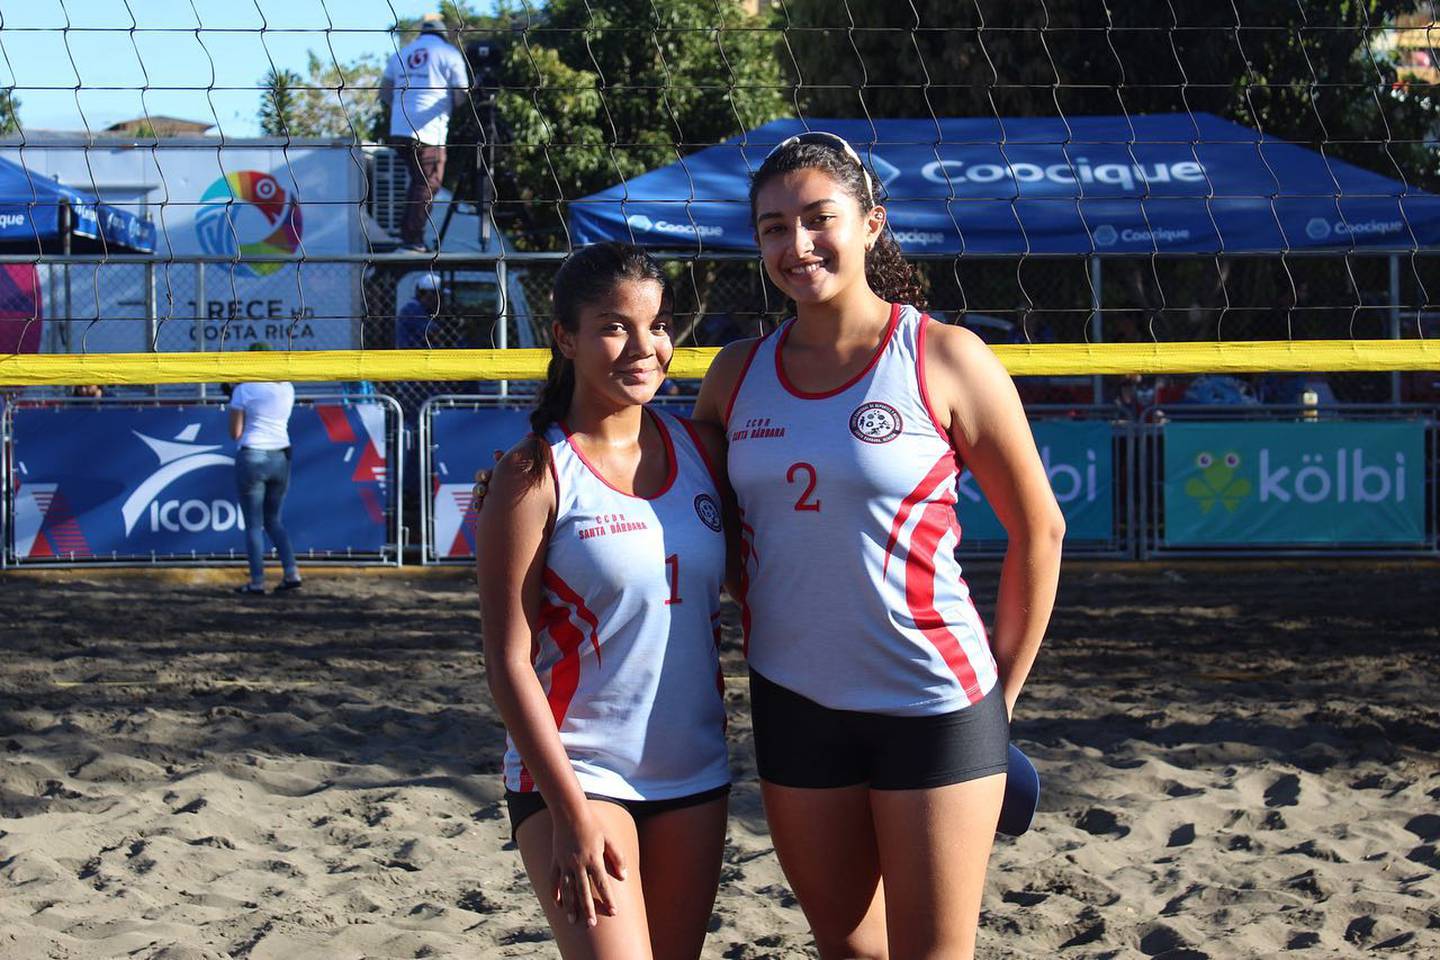 El equipo femenino de voleibol de playa Sub-19 de Santa Bárbara lo integran Aliza Aguilar y Wendy Ortega . Ellas participaron en la edición 40 de los Juegos Deportivos Nacionales Icoder 2022-2023. Ganaron la medalla de plata